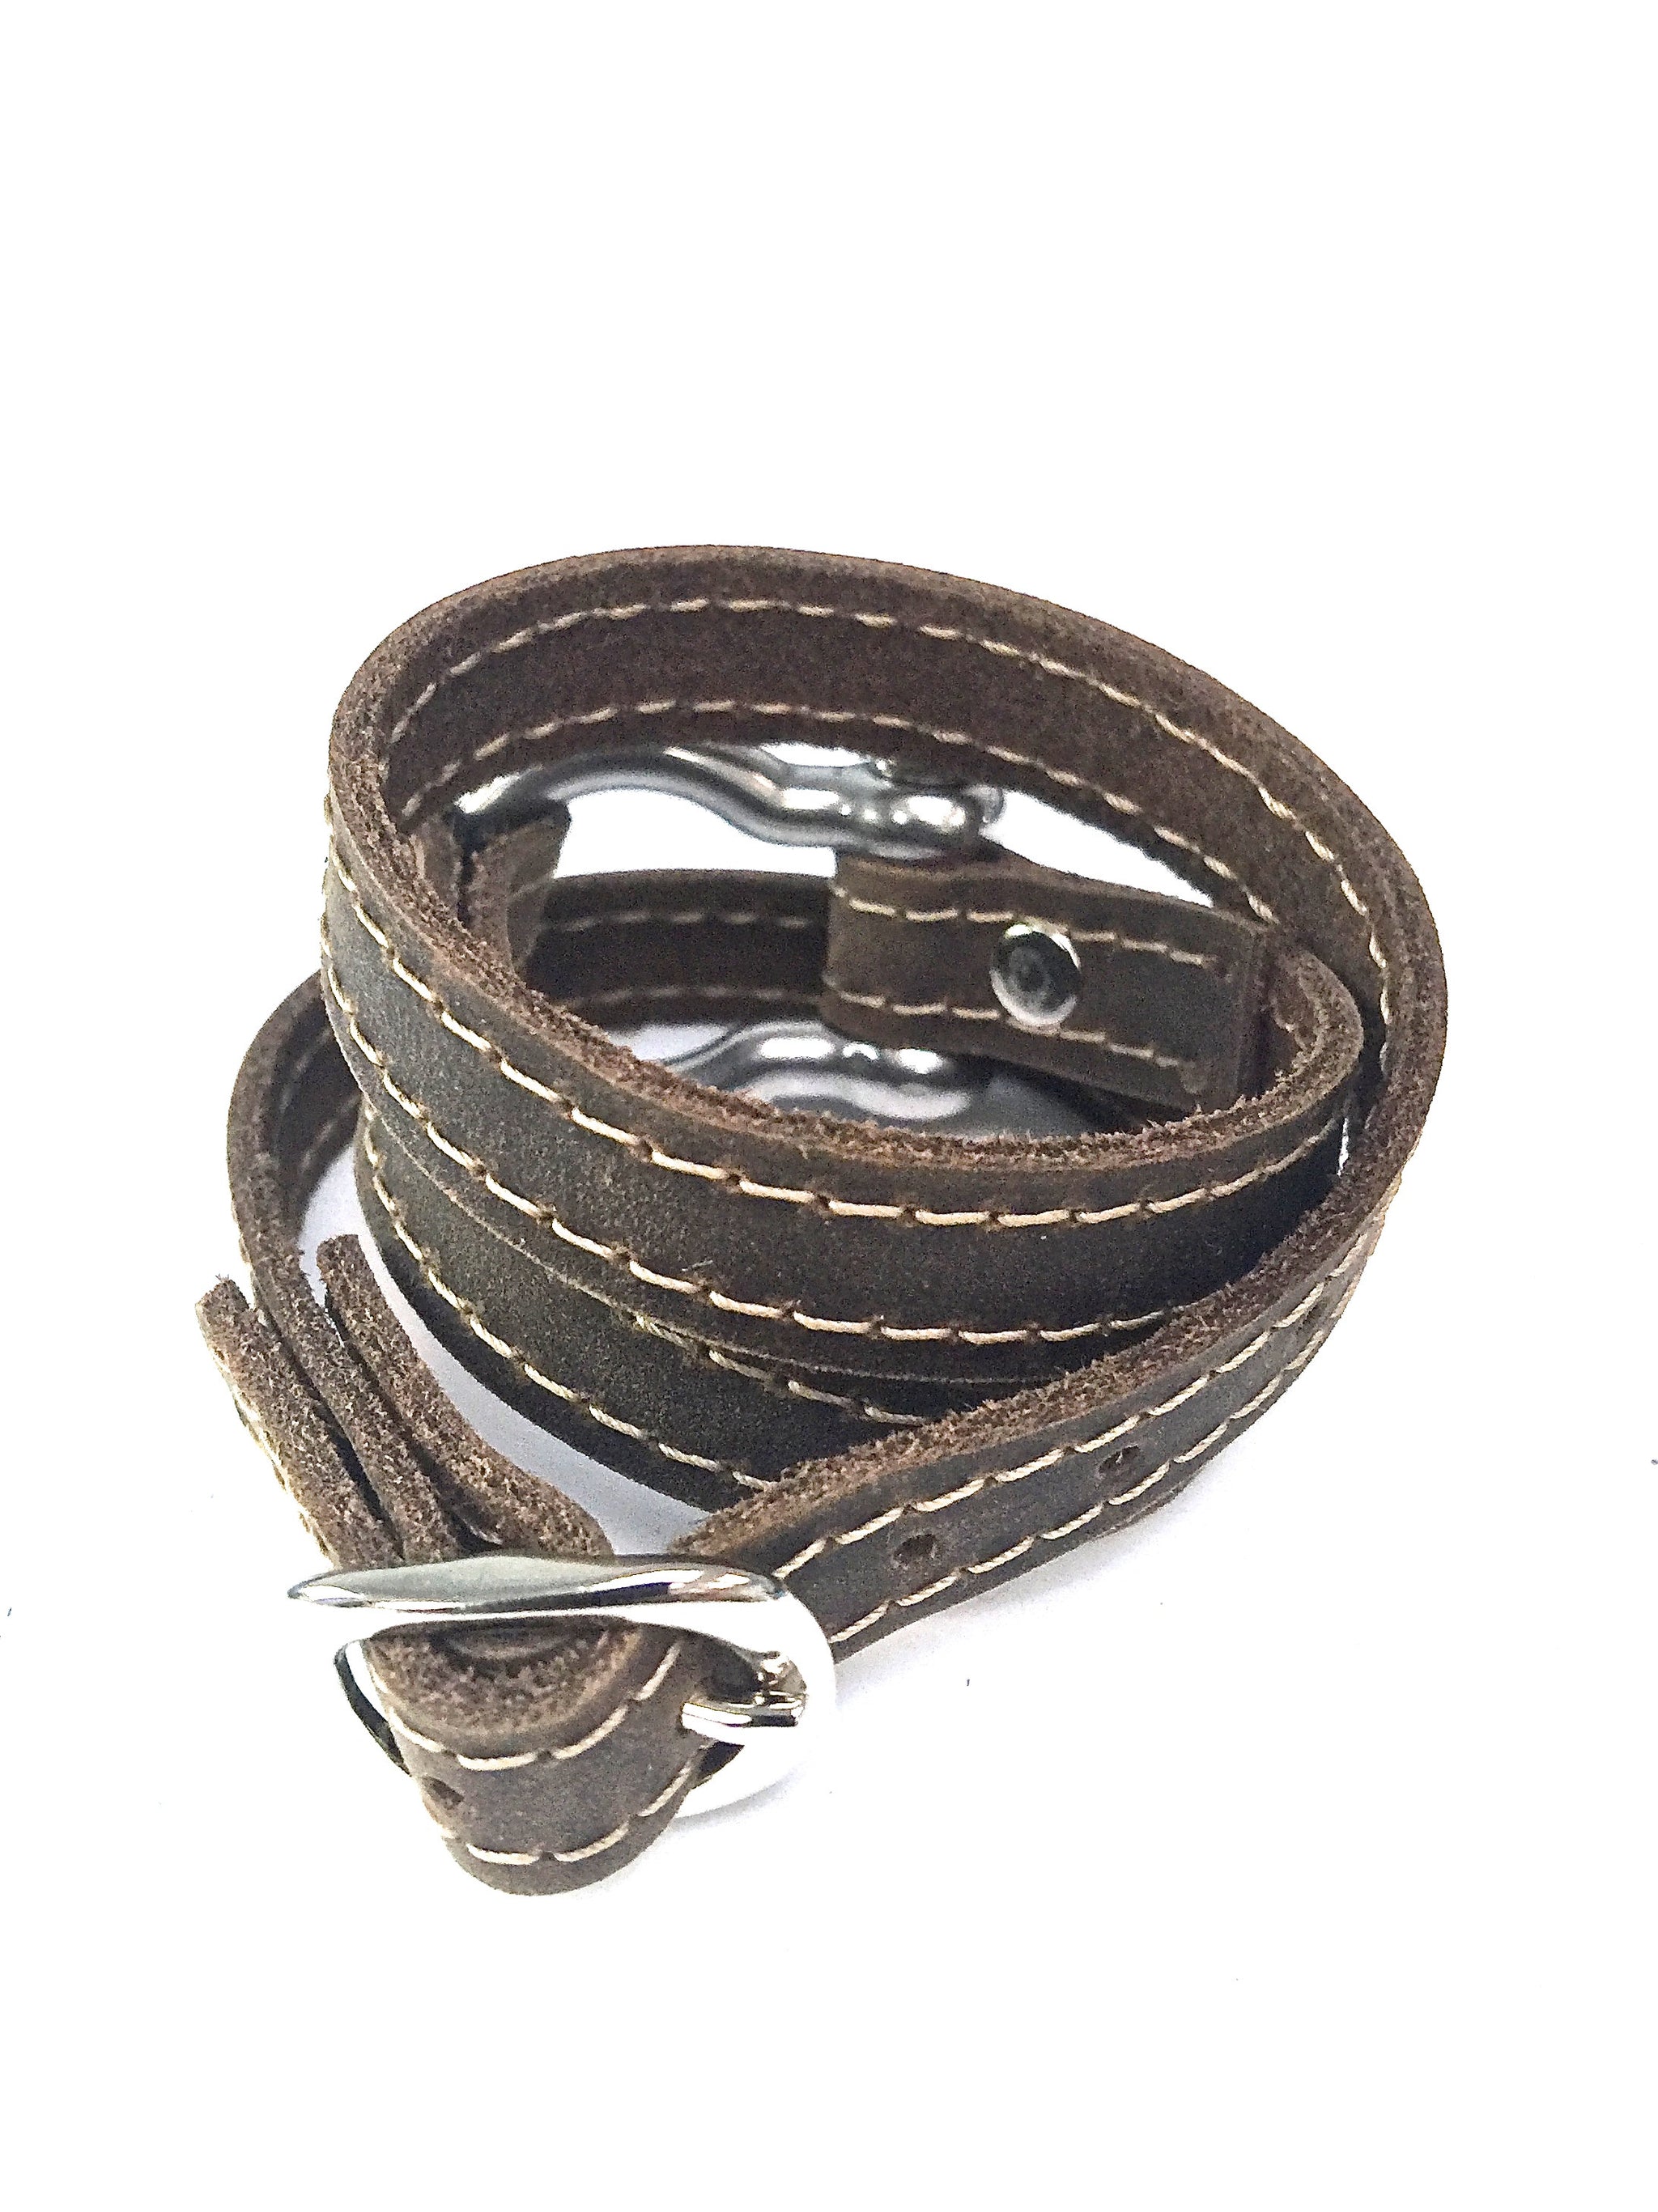 Signature Shackle Wraparound Bracelet Distressed Utility Leather